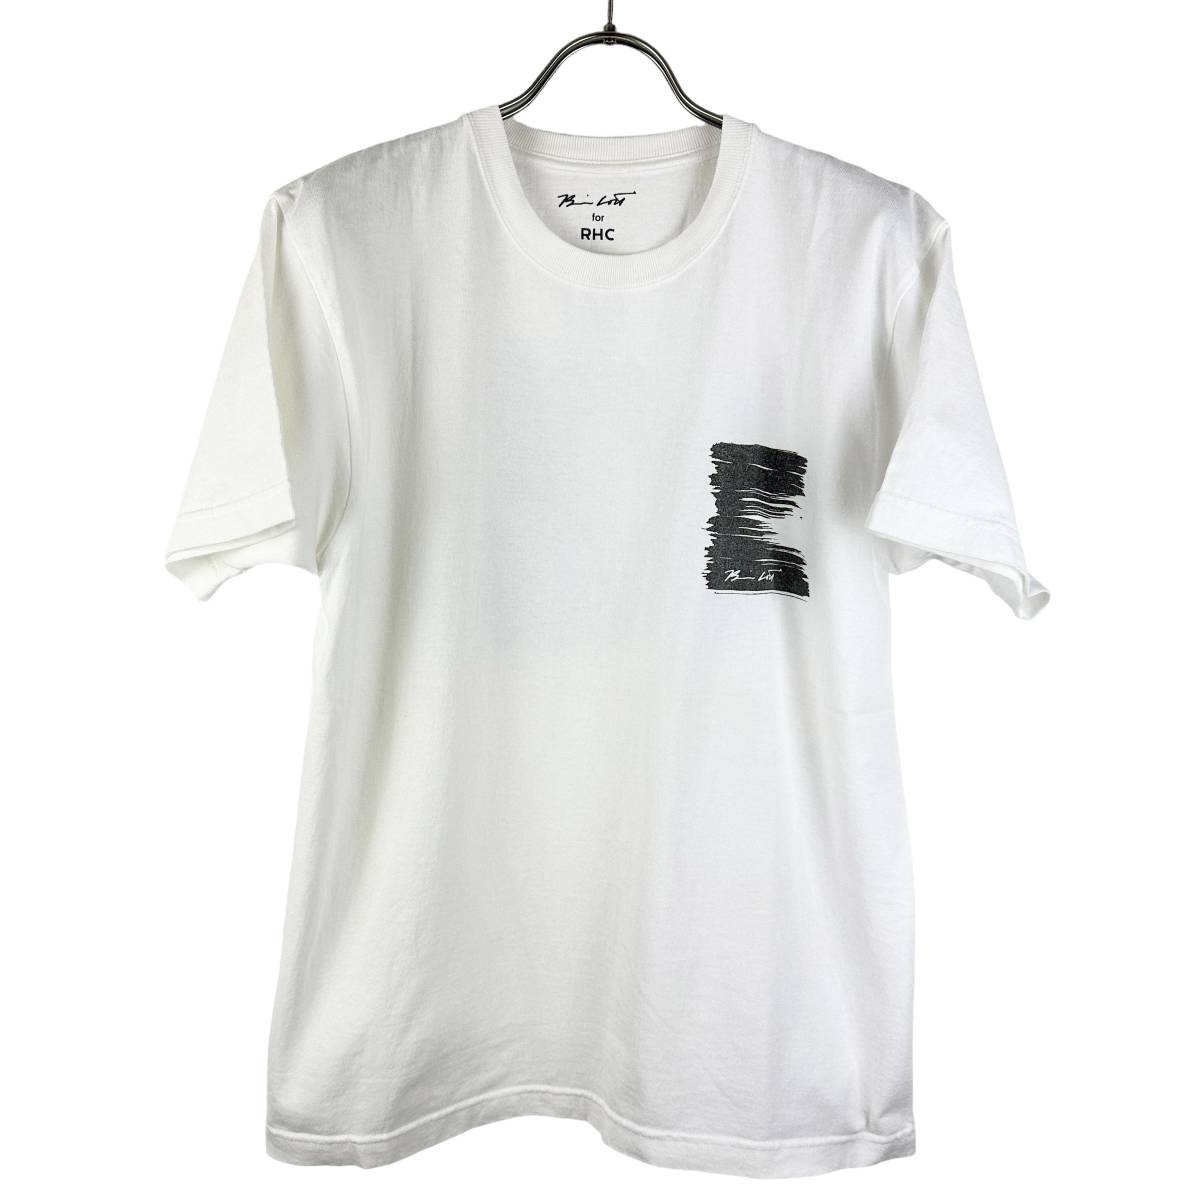 Ron Herman(ロンハーマン) Resort Pattern T Shirt (white)